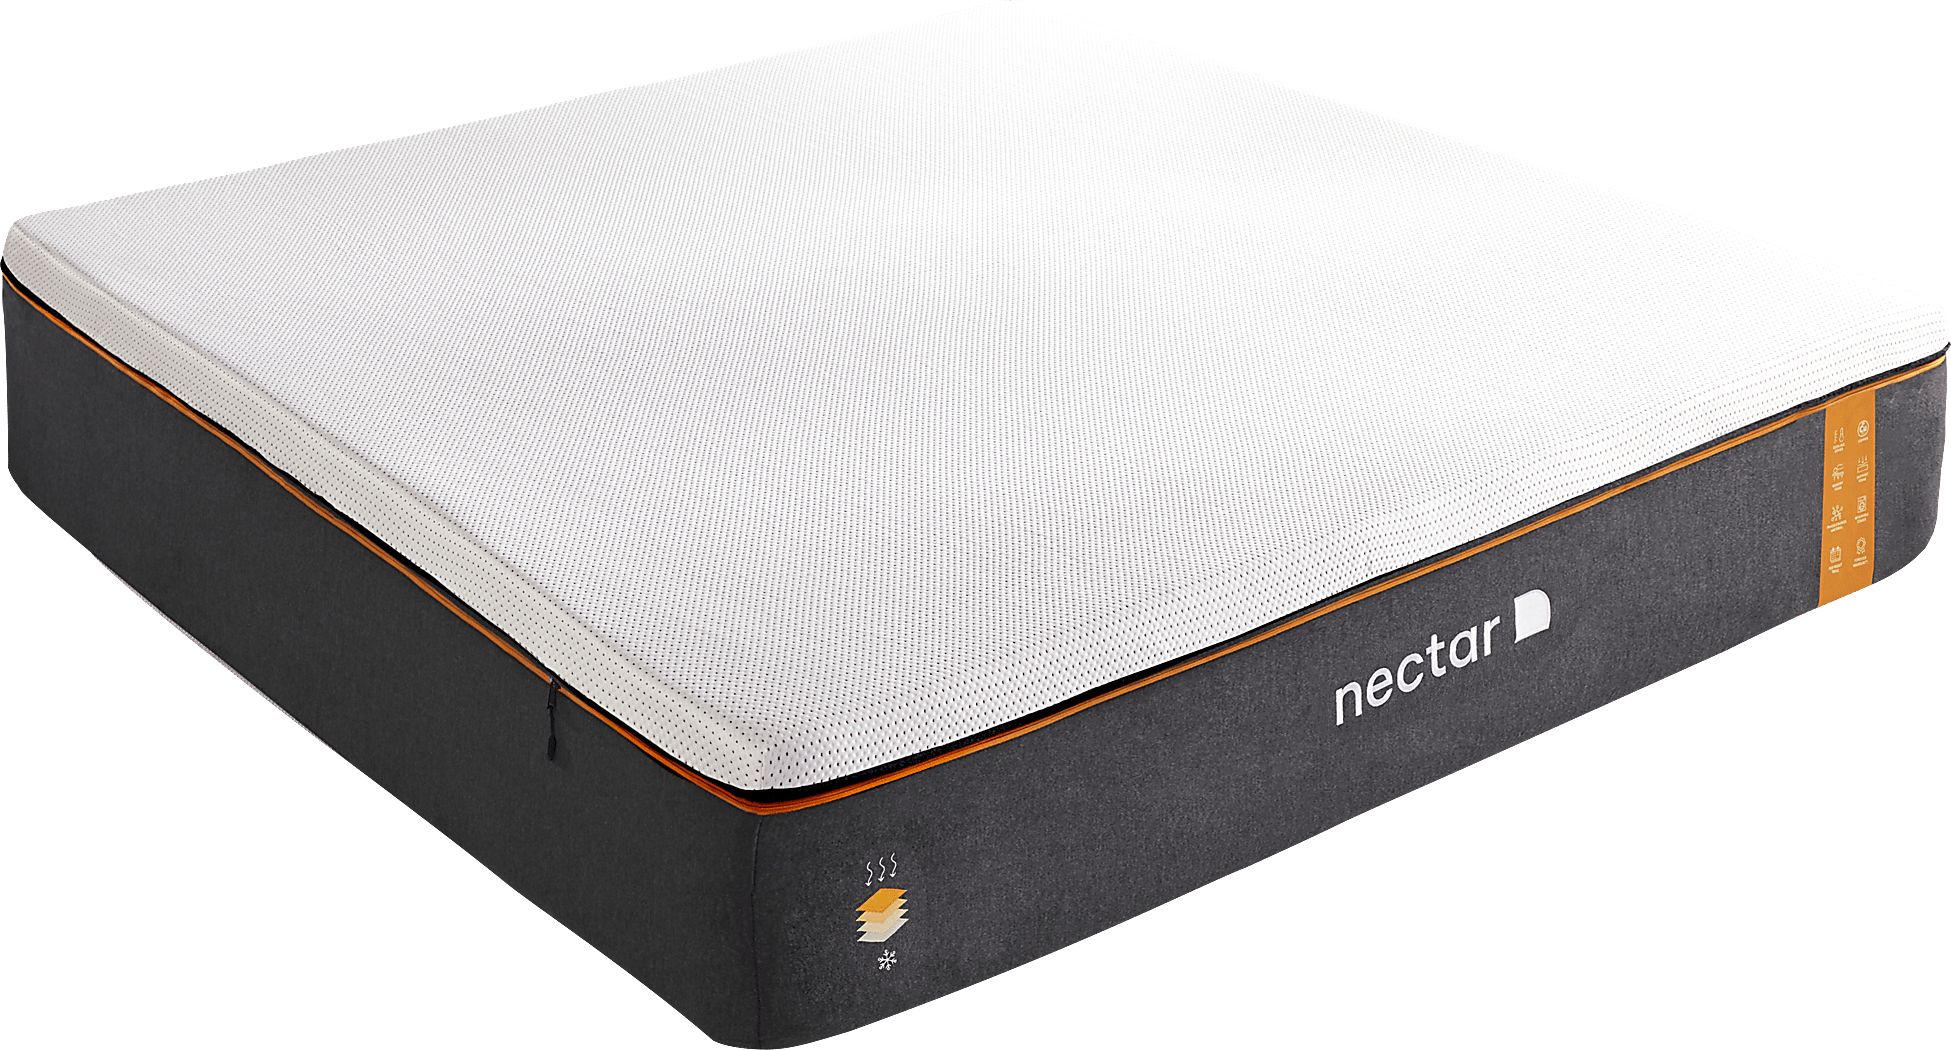 nectar king size mattress